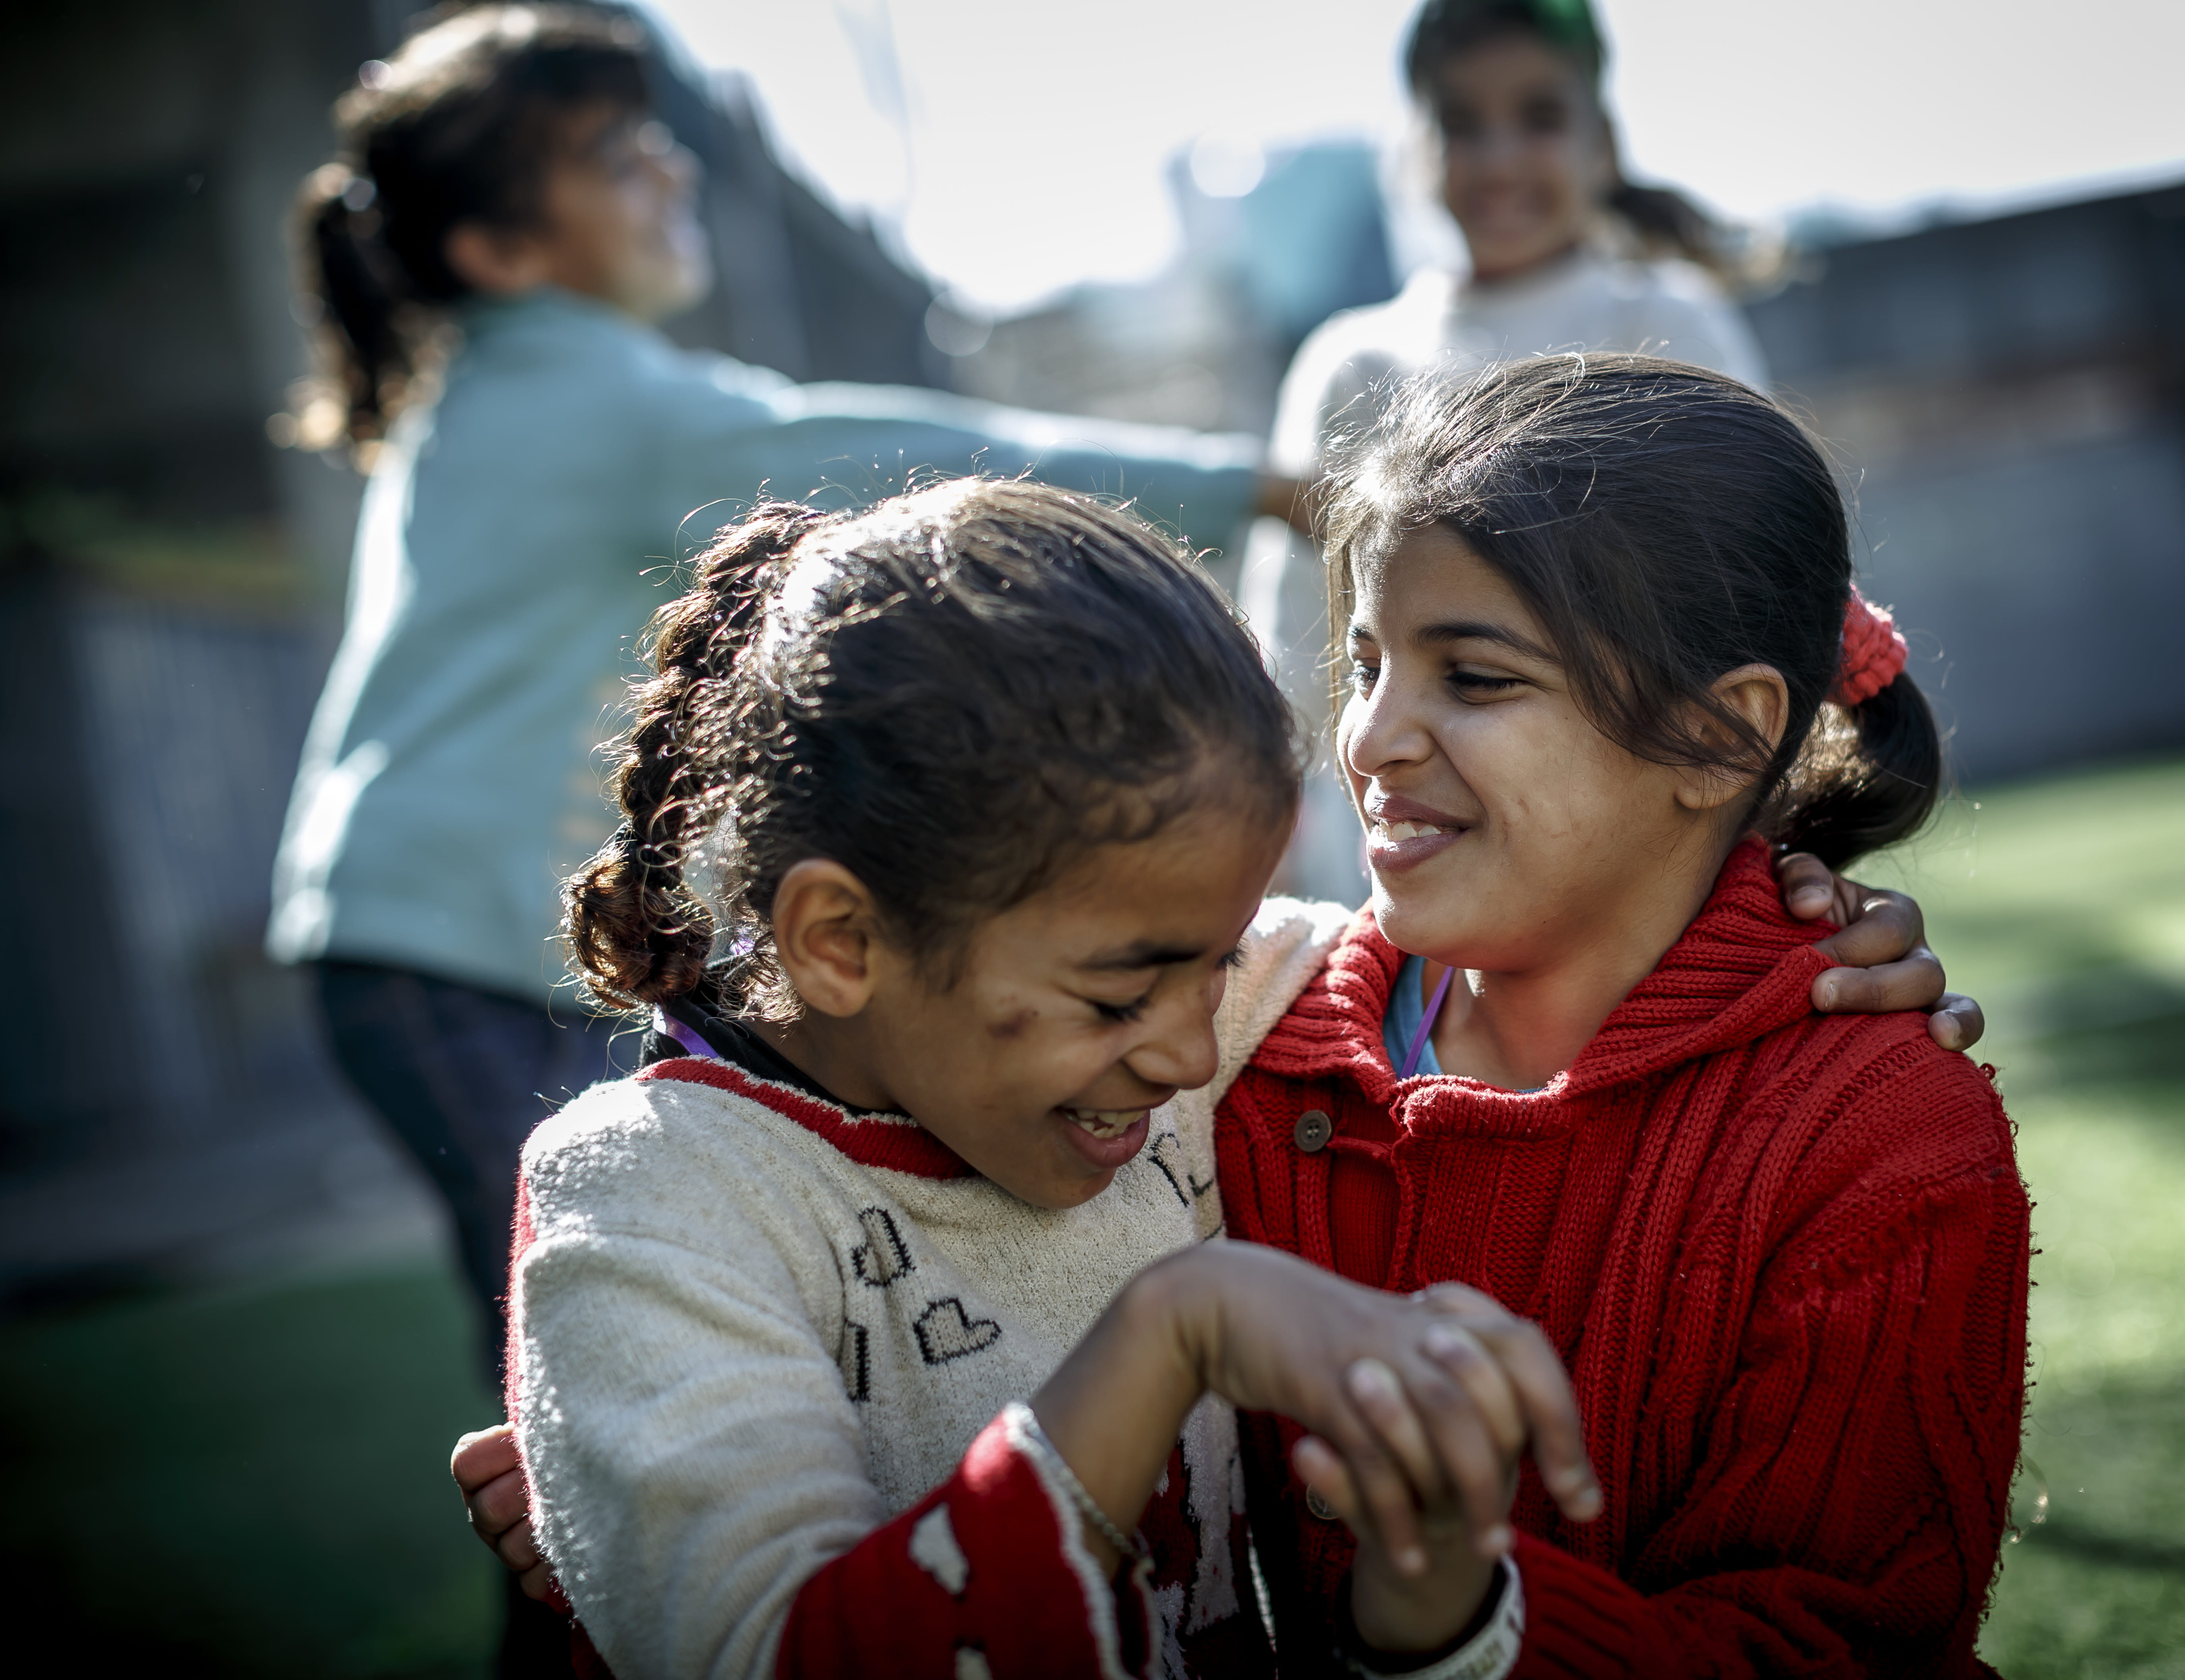 Mädchen, die aus Syrien geflüchtet sind, beim Tanzen (Quelle: Jakob Studnar)